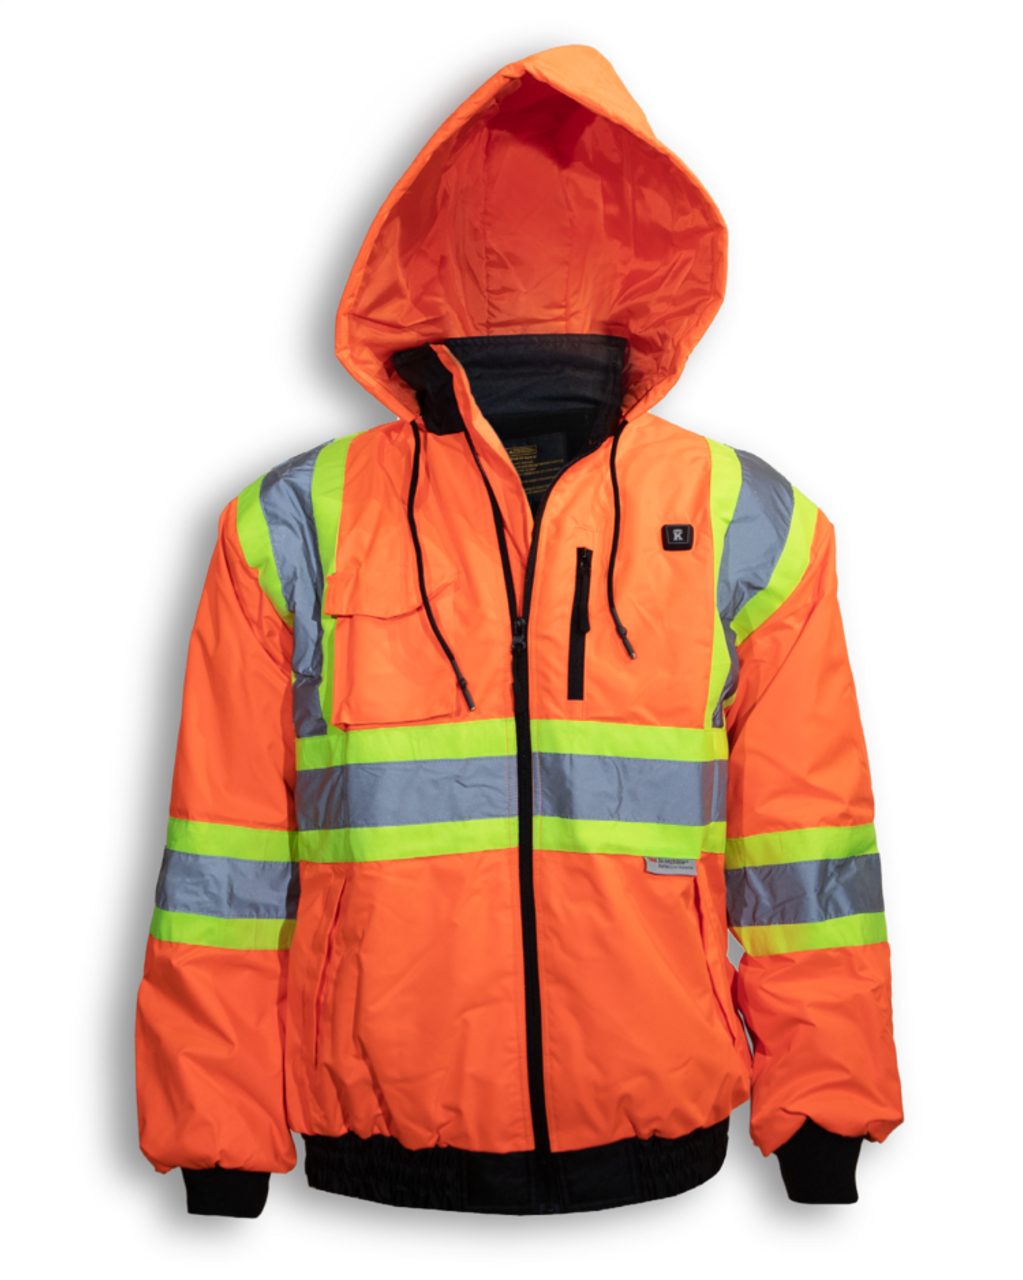 230C-3 Orange Hi Vis Warm Jacket with pockets Safety Depot